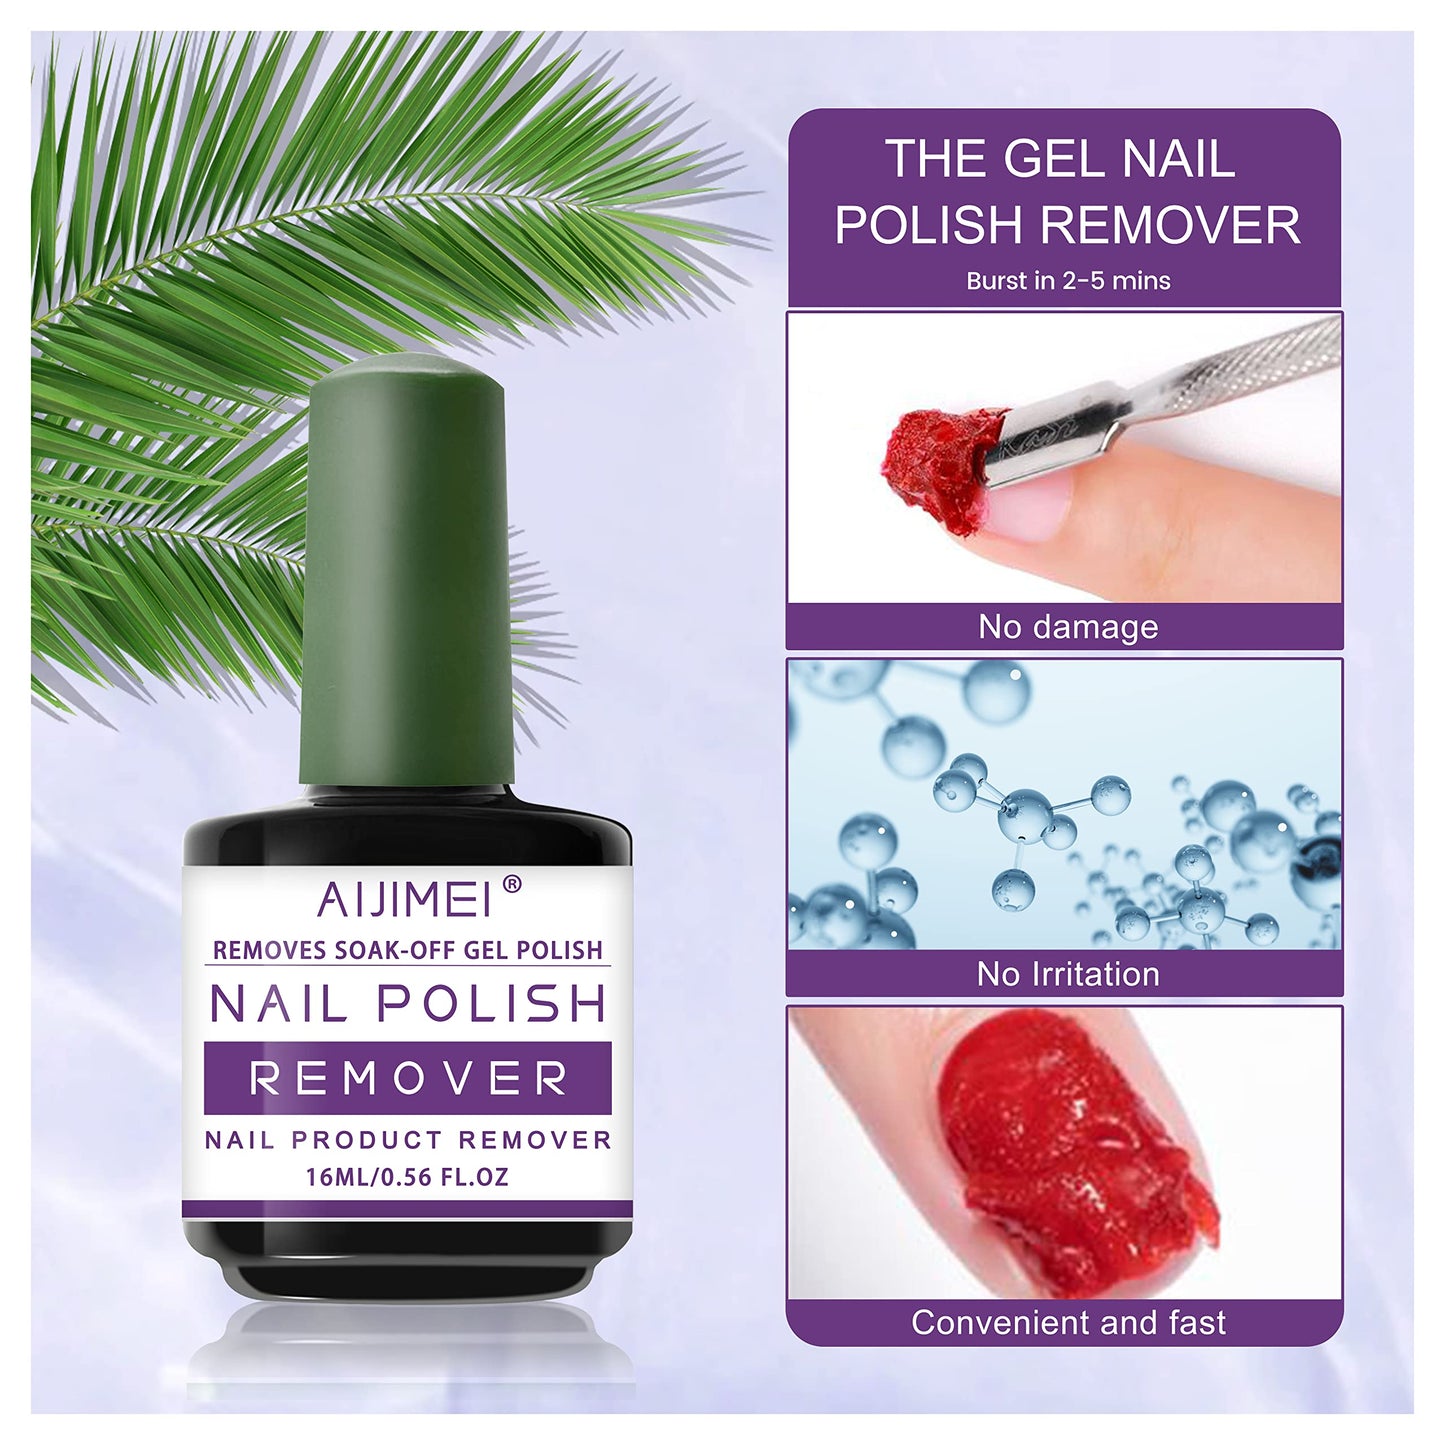 AIJIMEI Gel Nail Polish Remover-15ml/0.5fl.oz Nail Gel Polish Remover Kit Remover Quickly Nail Care with Nail Glue Remover,Nail Cuticle Oil,Nail Polish Remover Pads for Nails